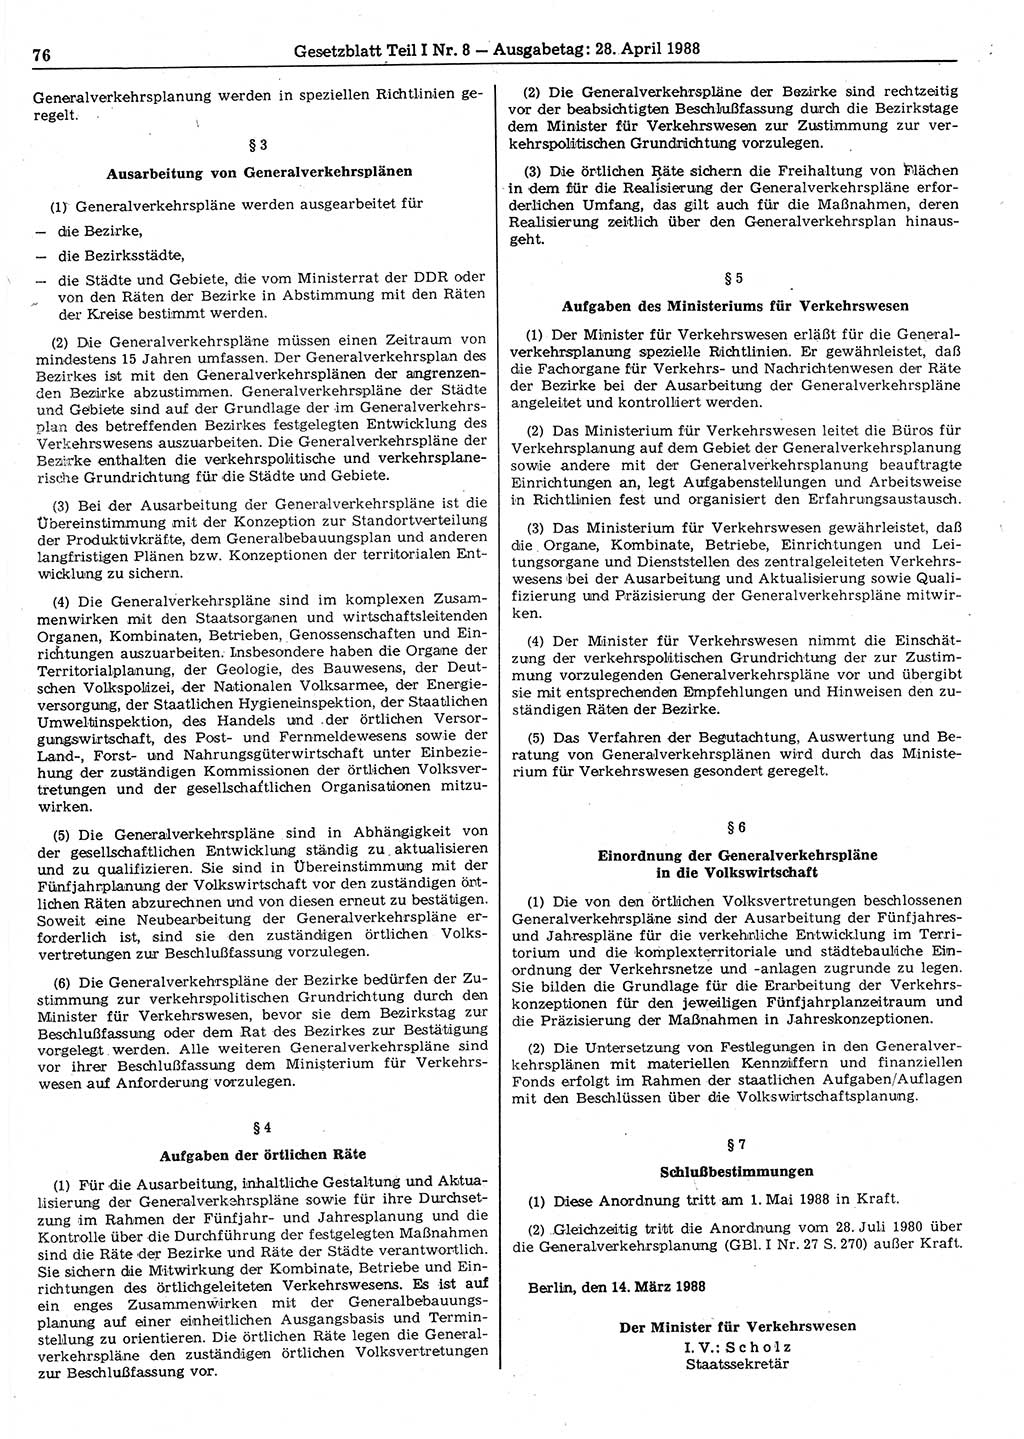 Gesetzblatt (GBl.) der Deutschen Demokratischen Republik (DDR) Teil Ⅰ 1988, Seite 76 (GBl. DDR Ⅰ 1988, S. 76)